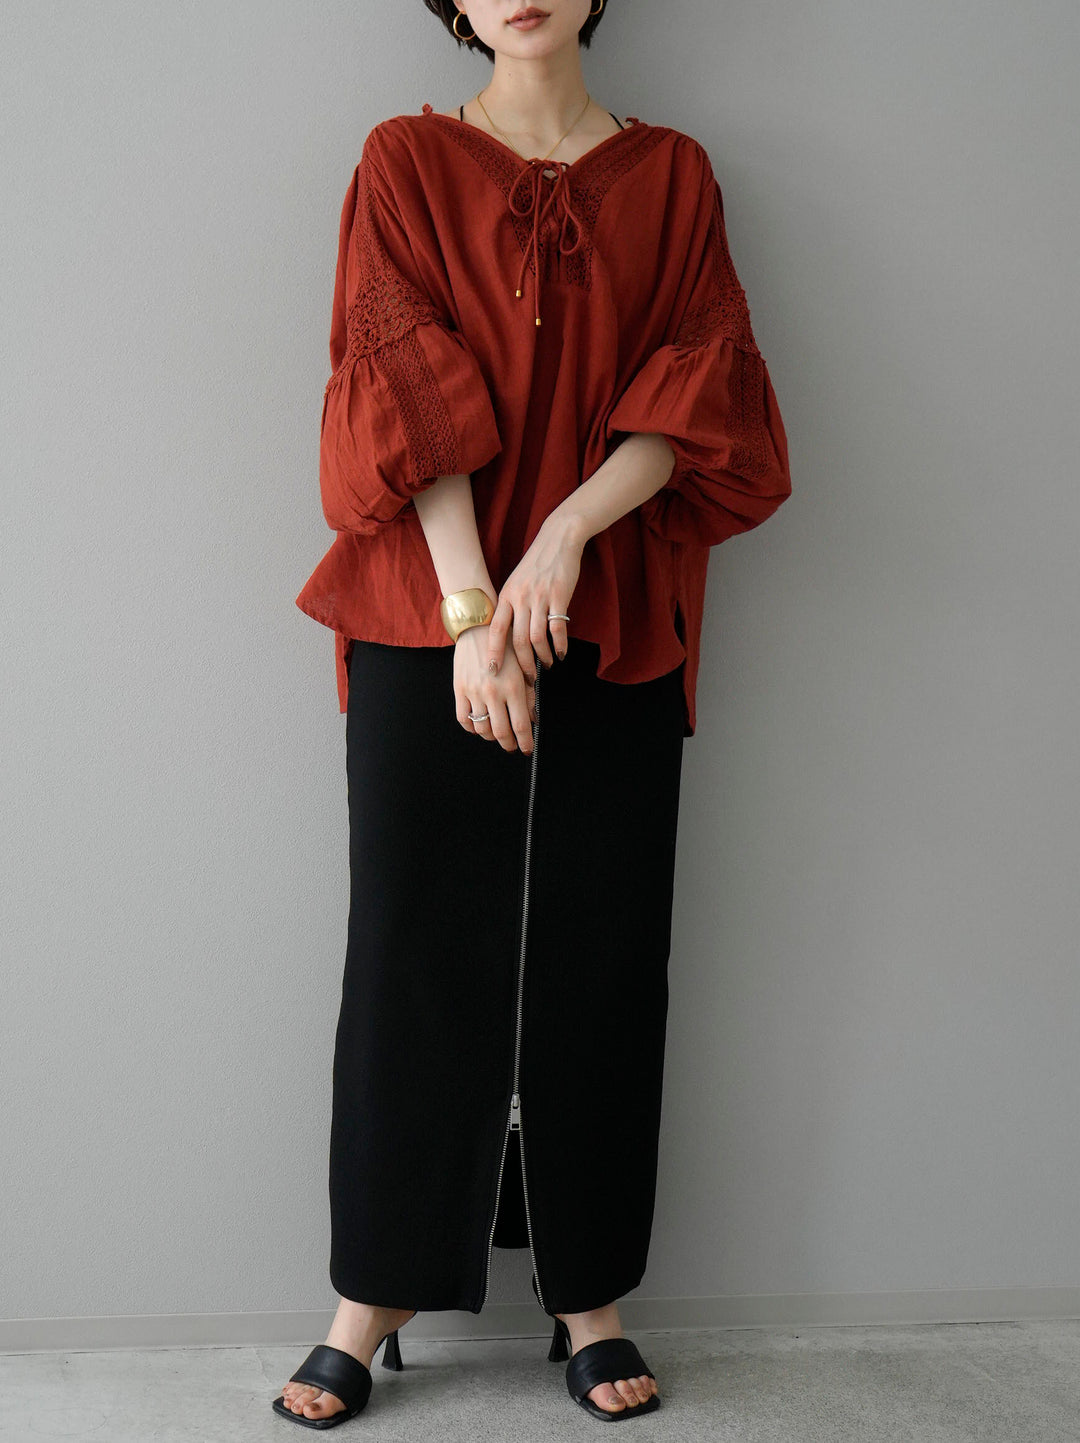 [SET] Cotton lace blouse + front zip knit tight skirt (2set)